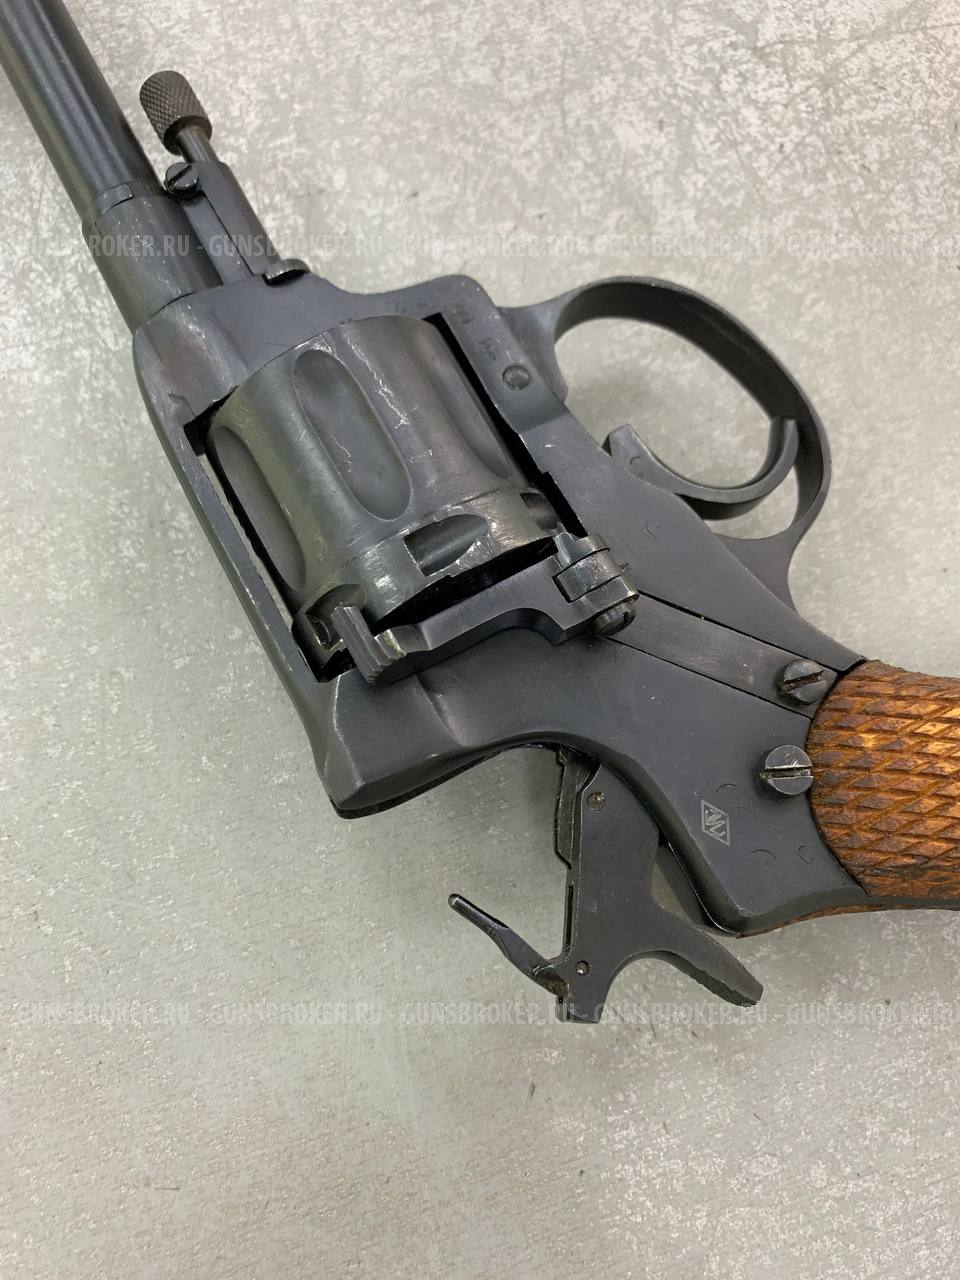 Охолощенный револьвер Наган 1932 год.